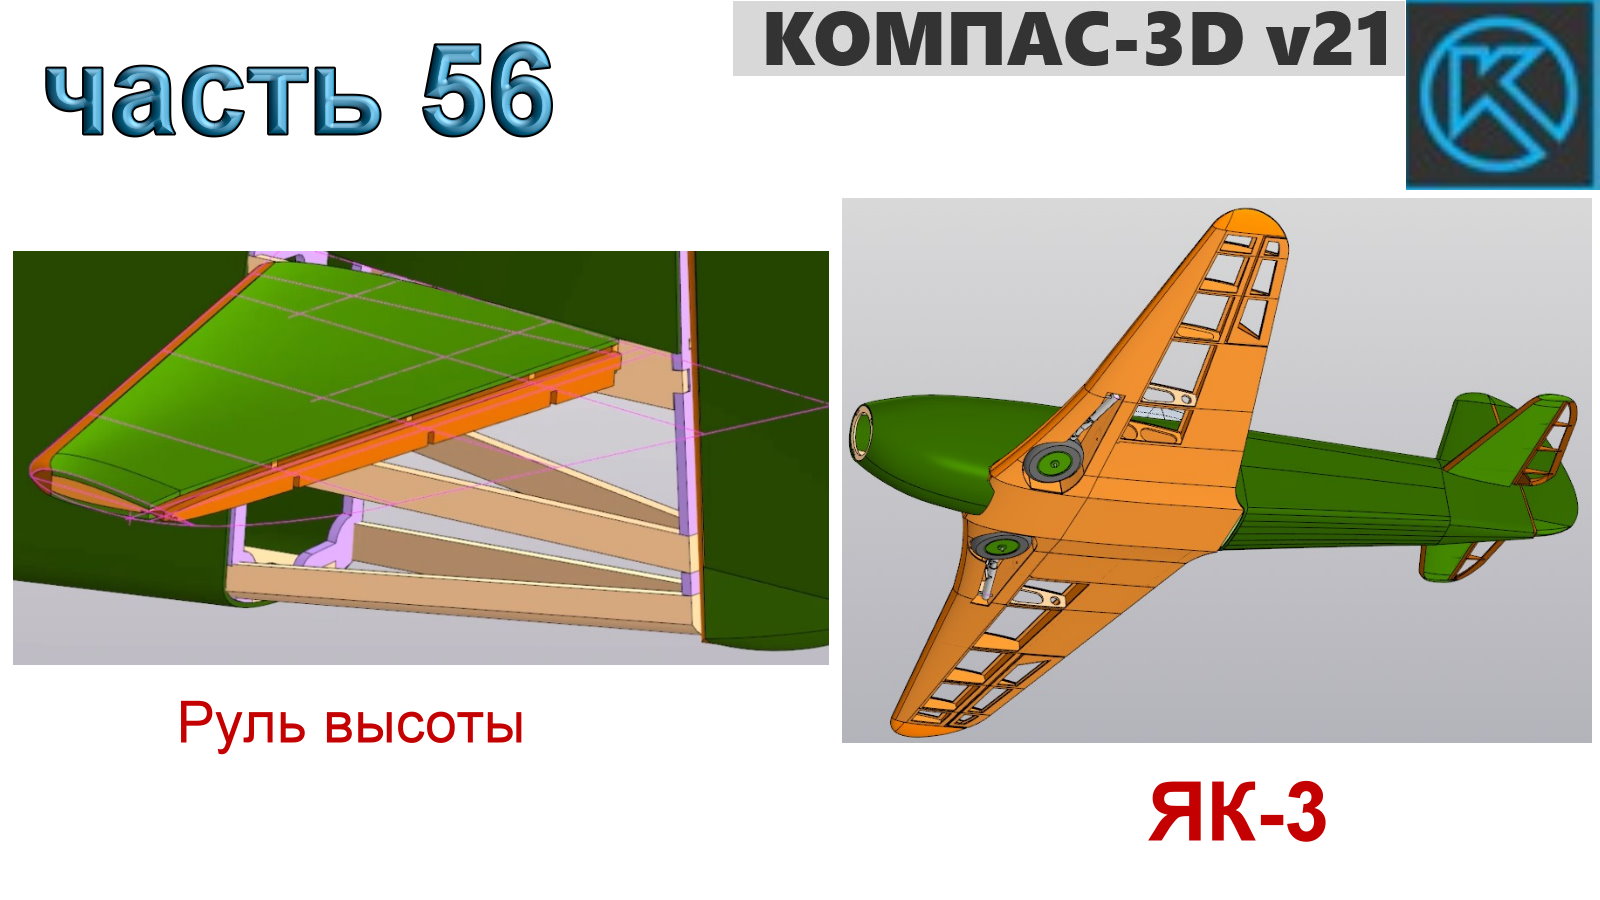 Радиоуправляемая модель самолета ЯК-3_1250мм (часть 56)